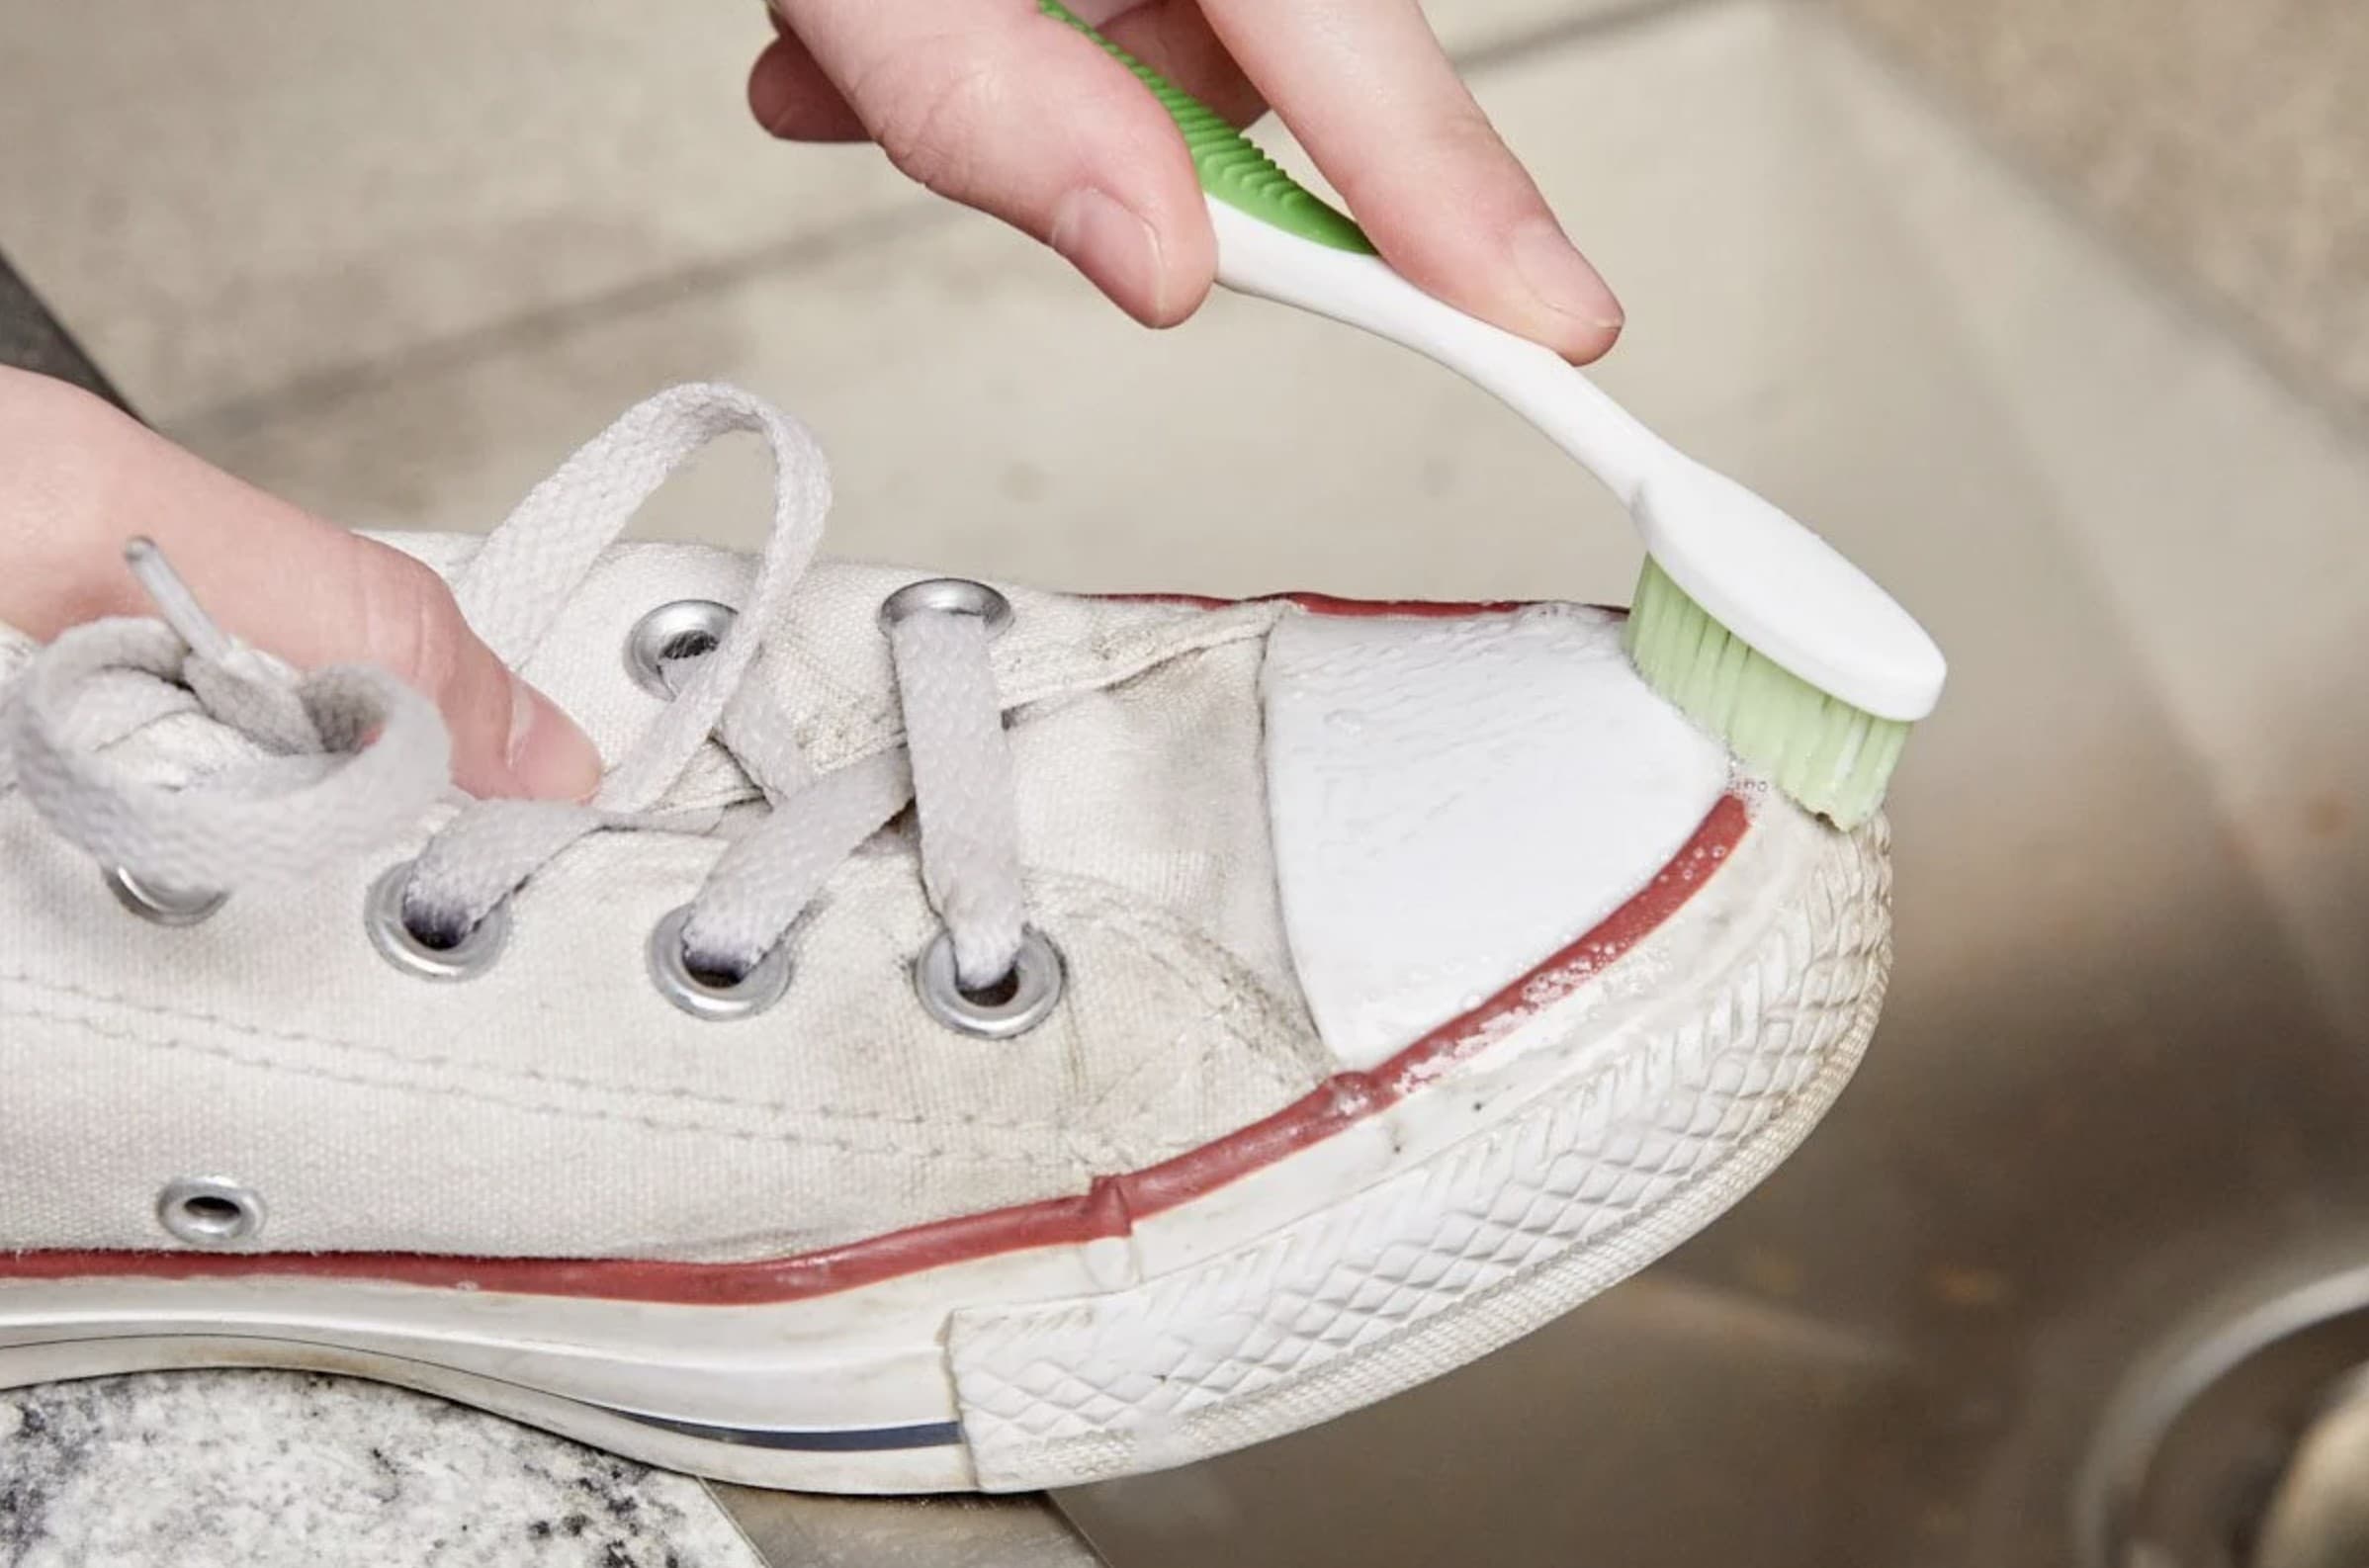 Можно стирать белое с бежевым. Кеды в клею. Зубная паста для кроссовок. Протирает белую кеды салфеткой. Очистить белую обувь зубной пастой.